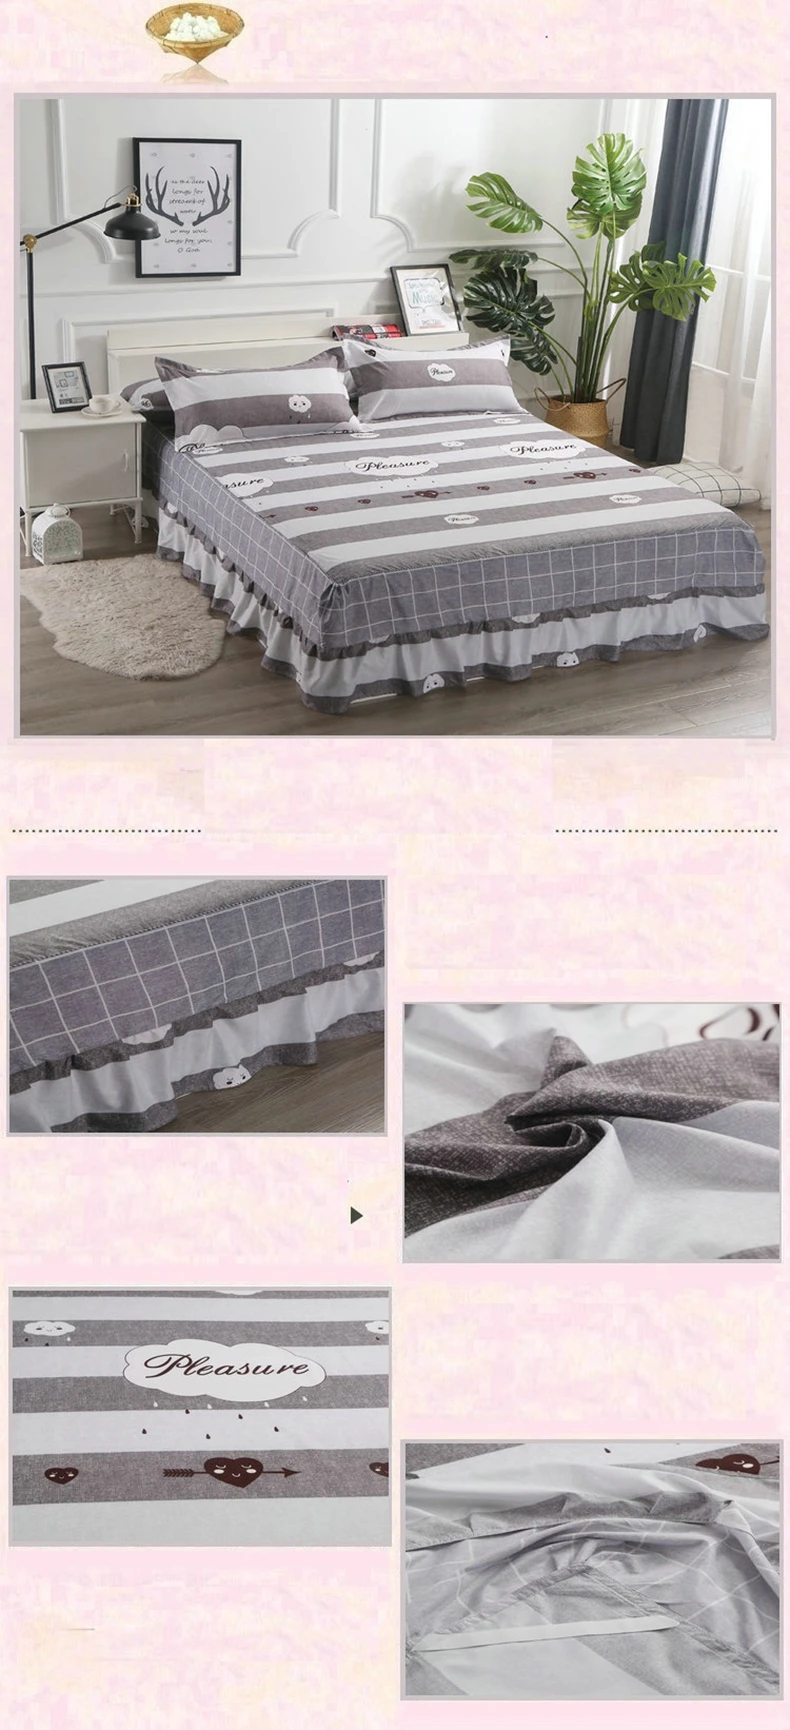 Полиэфирная юбка для кровати, эластичный чехол для матраса, юбки для кровати, цветочный узор, покрывало, постельное белье, размер King/queen